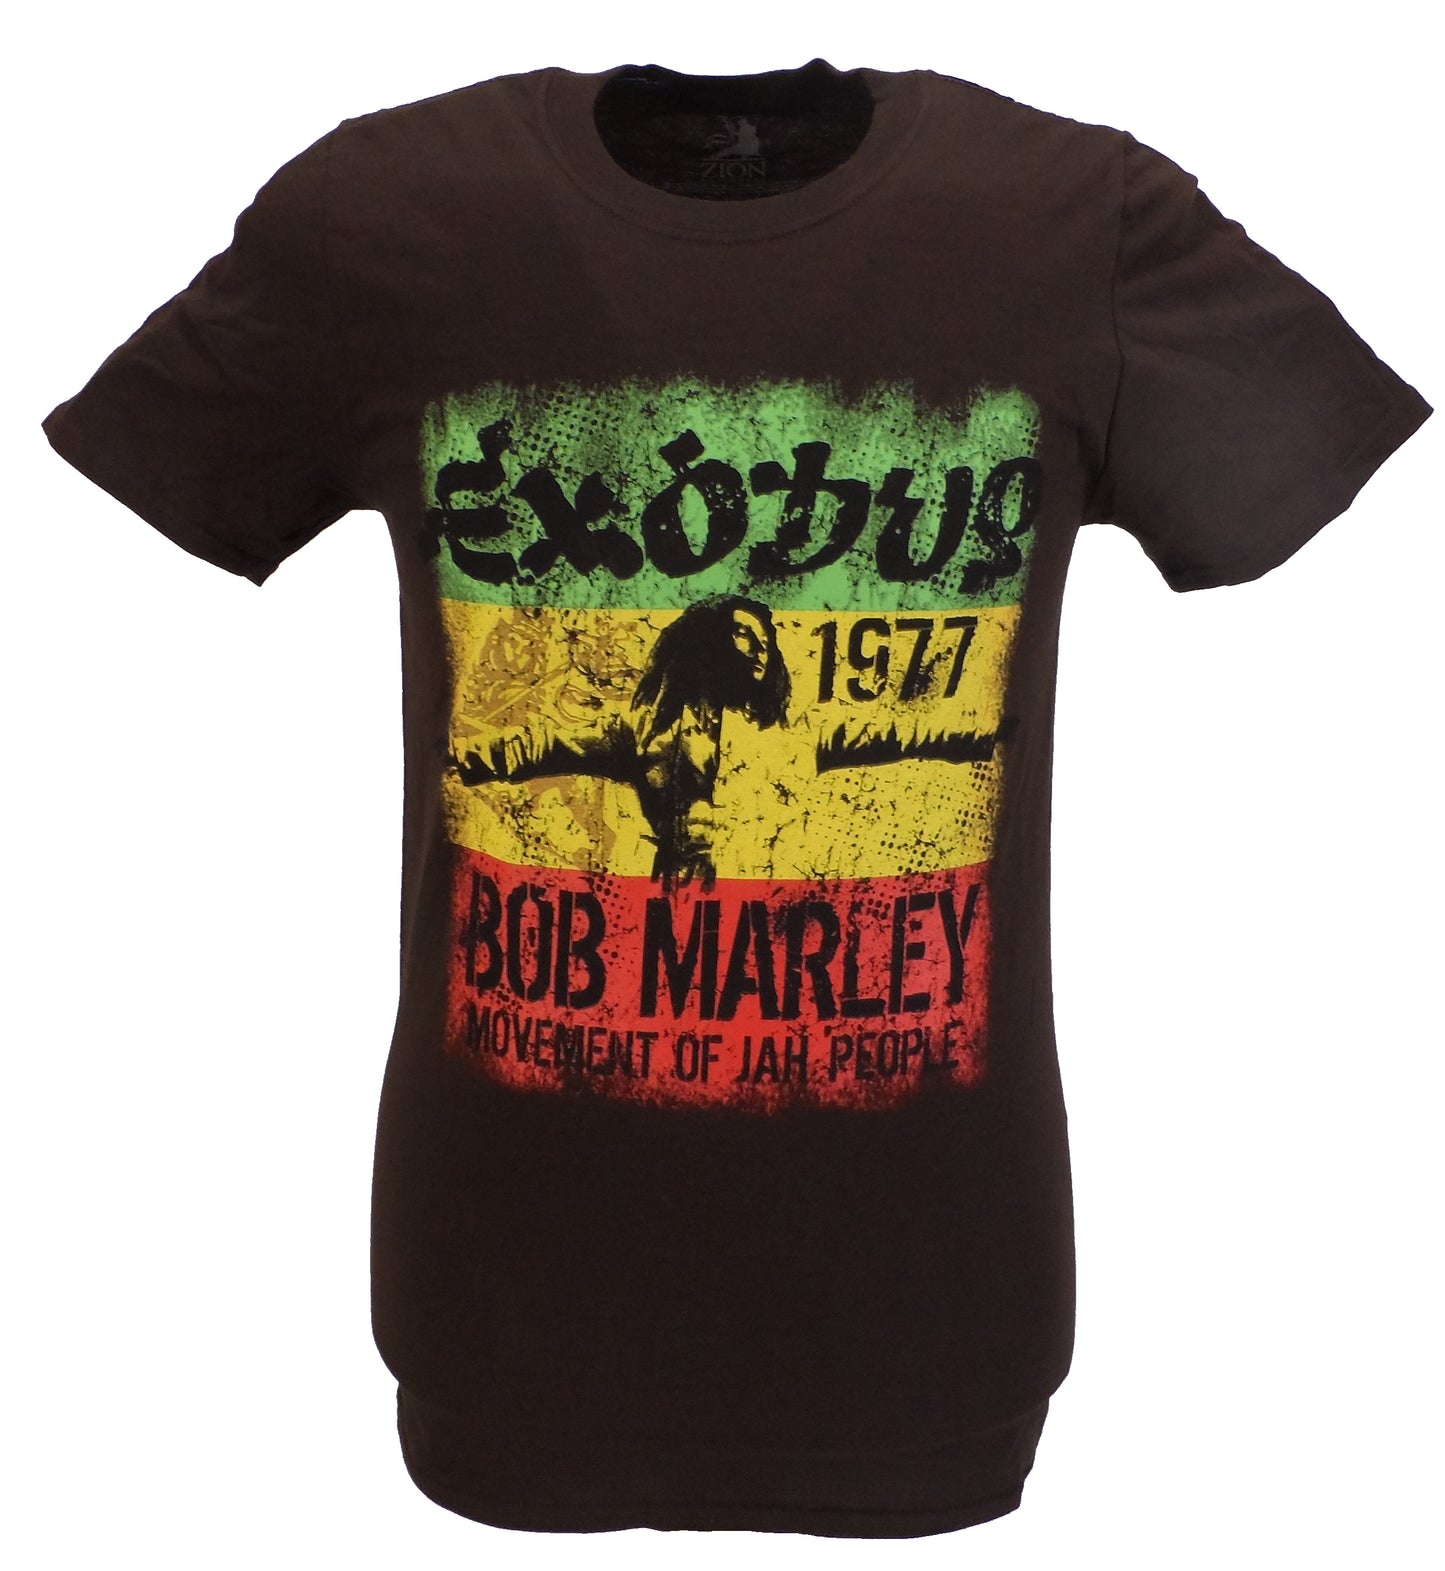 Offiziell lizenziertes Bob Marley Exodus-T-Shirt für Herren